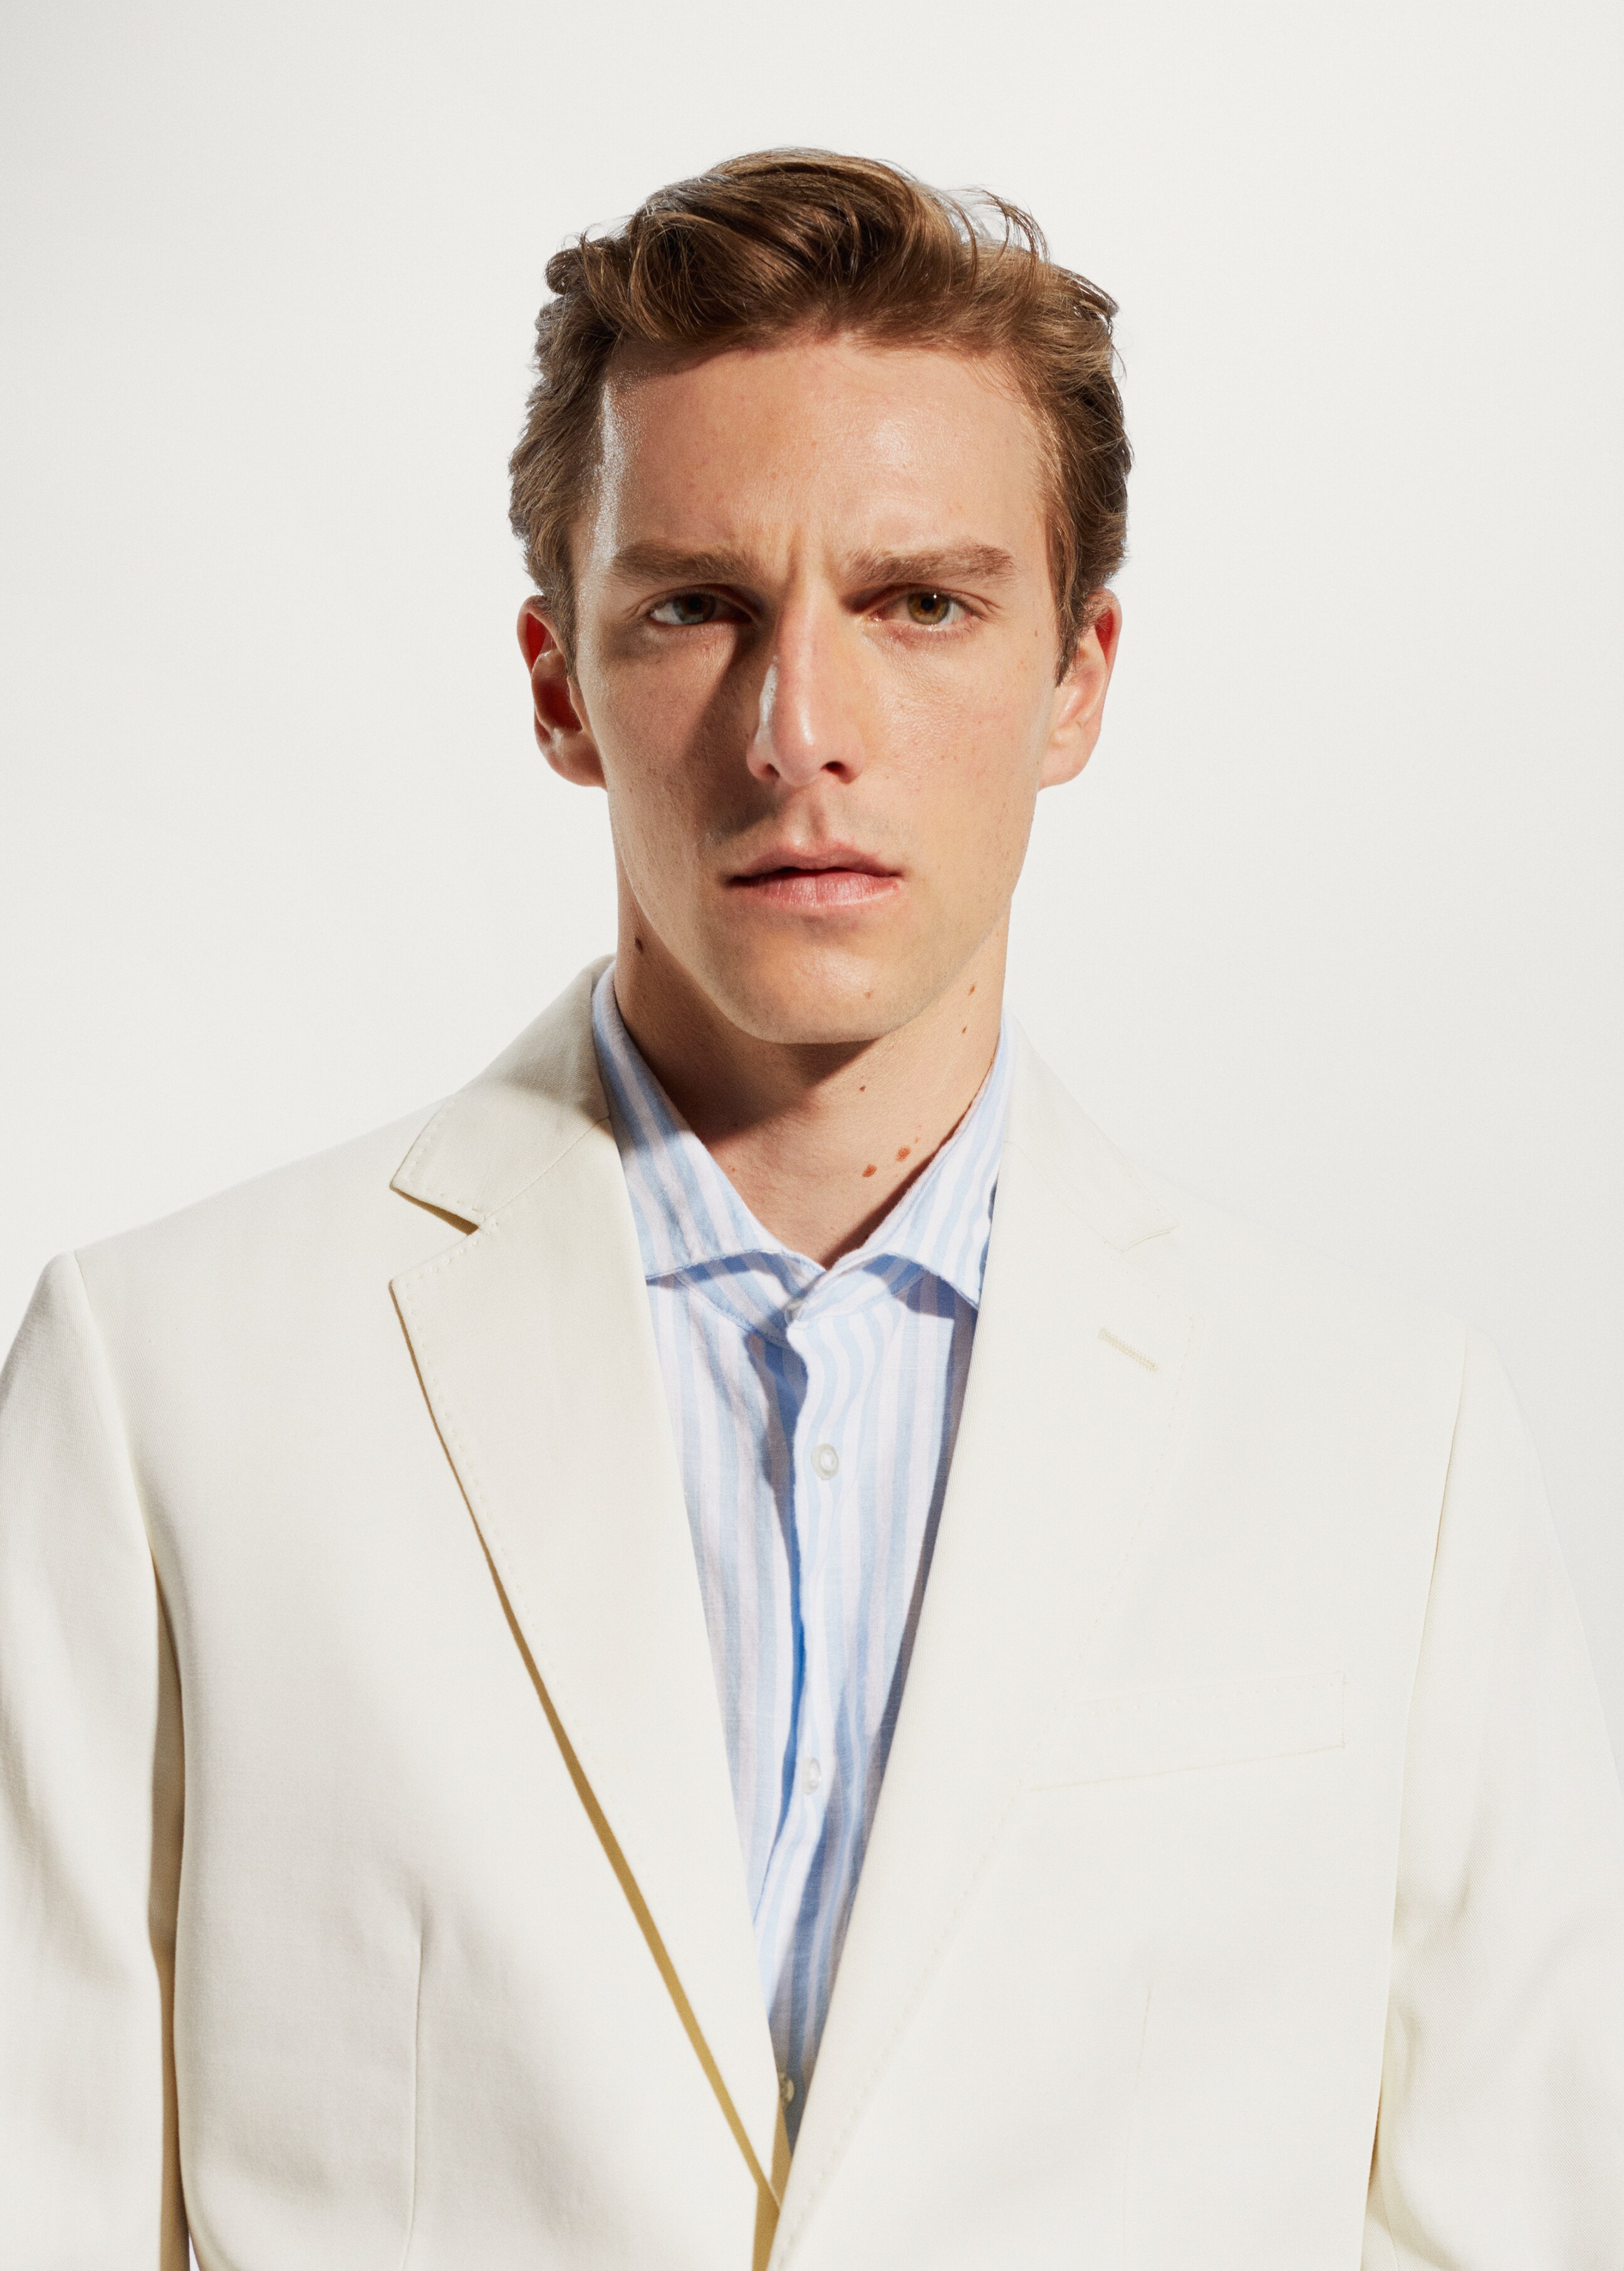 100% linen suit blazer - Details of the article 1